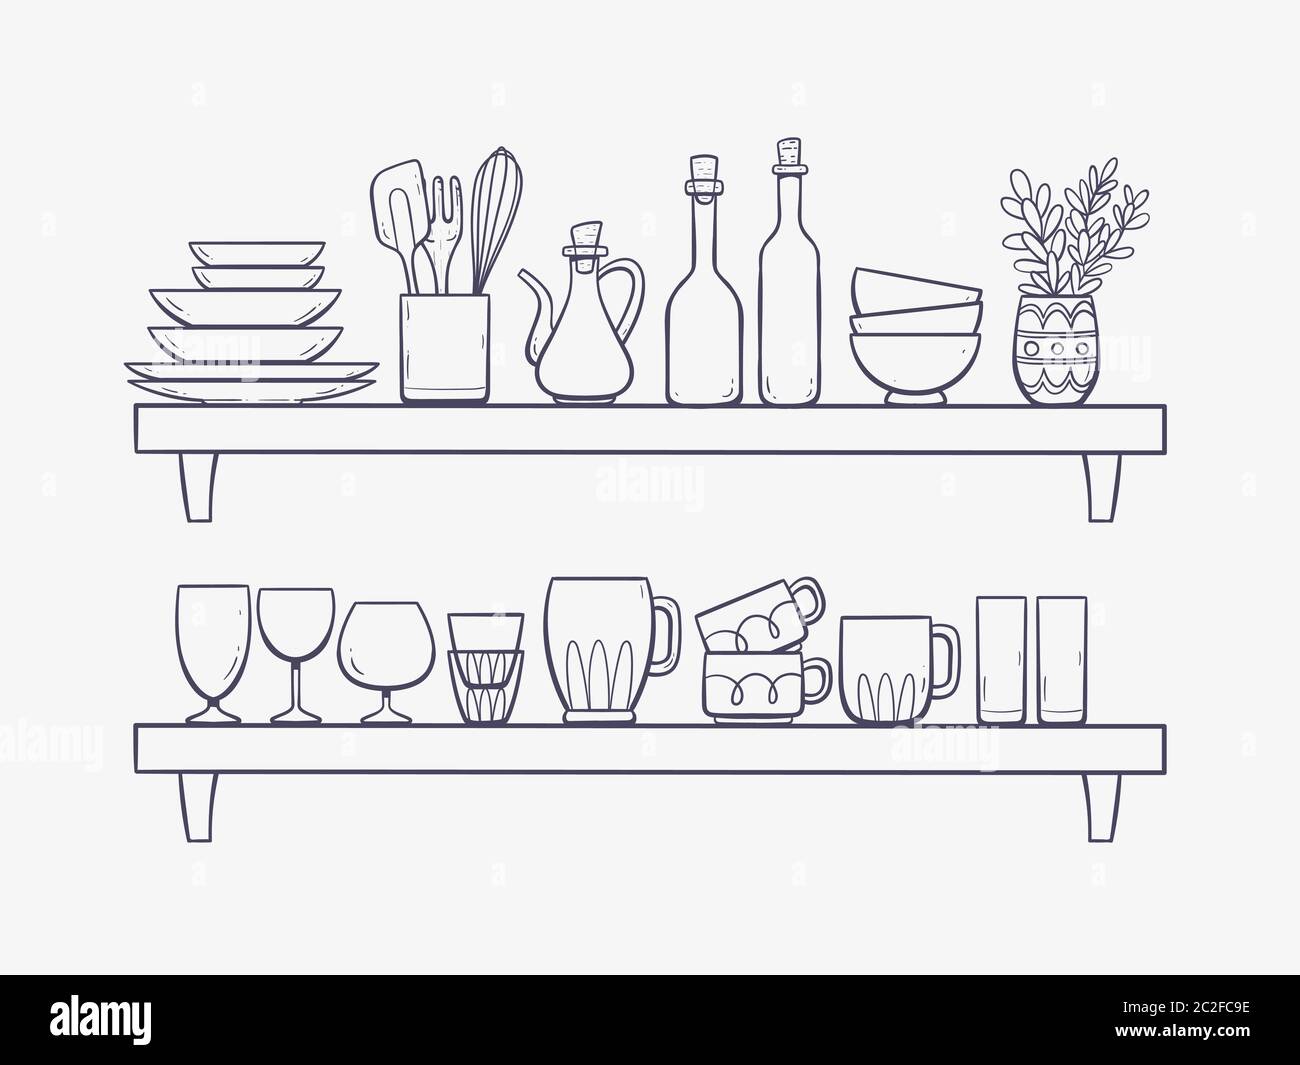 Forniture per cucina su ripiani. Due ripiani con ciotole, bottiglie, un'aroccia, bicchieri, tazze e altri prodotti da cucina. Illustrazione vettoriale disegnata a mano isolata Illustrazione Vettoriale